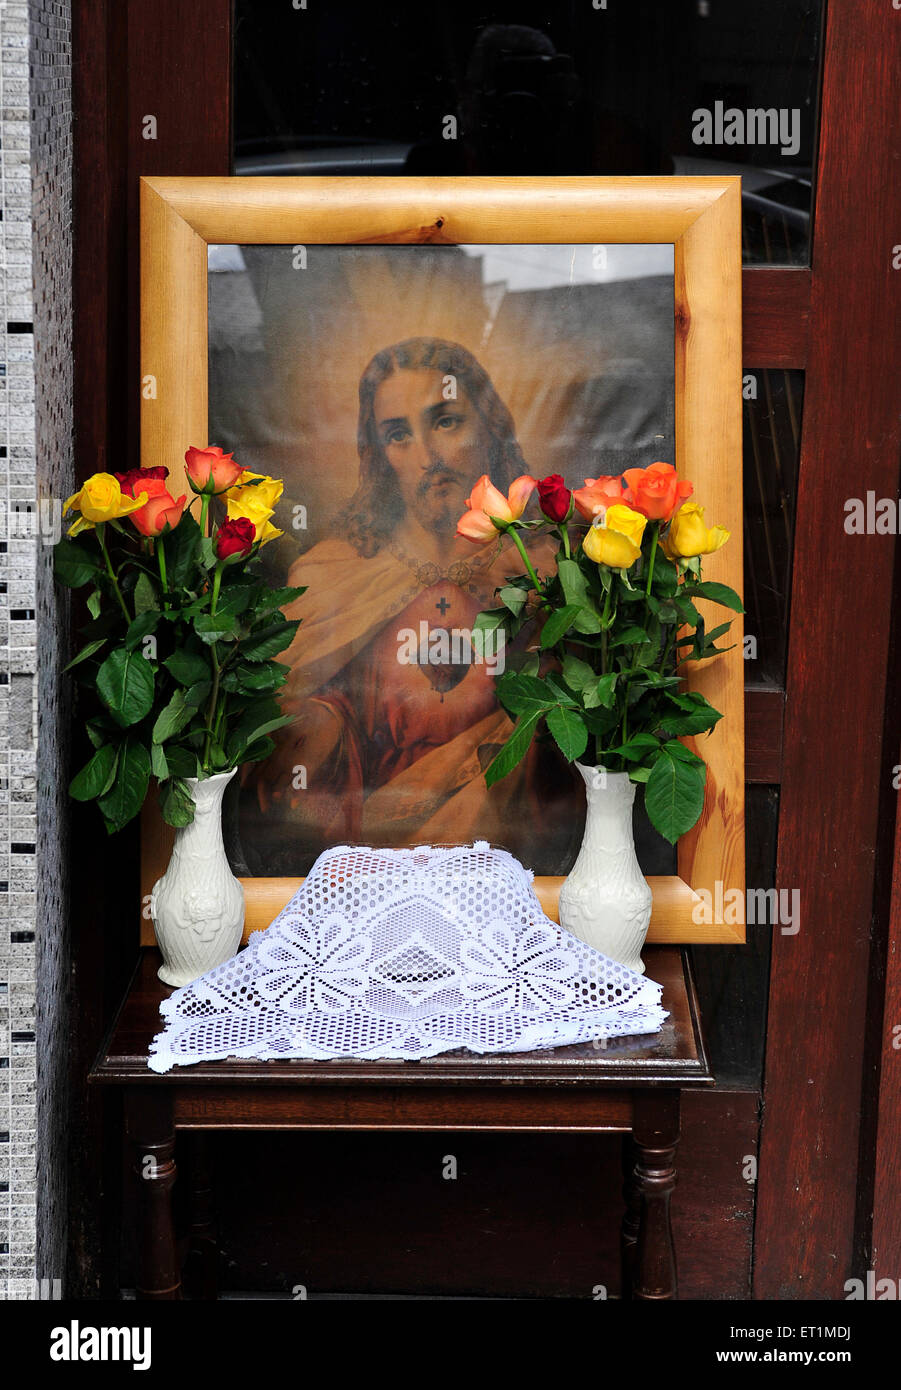 Immagine inquadrata di Gesù circondato da fiori al di fuori di una casa in Buncrana, County Donegal, Irlanda in occasione della festa del Corpus Domini. Foto Stock